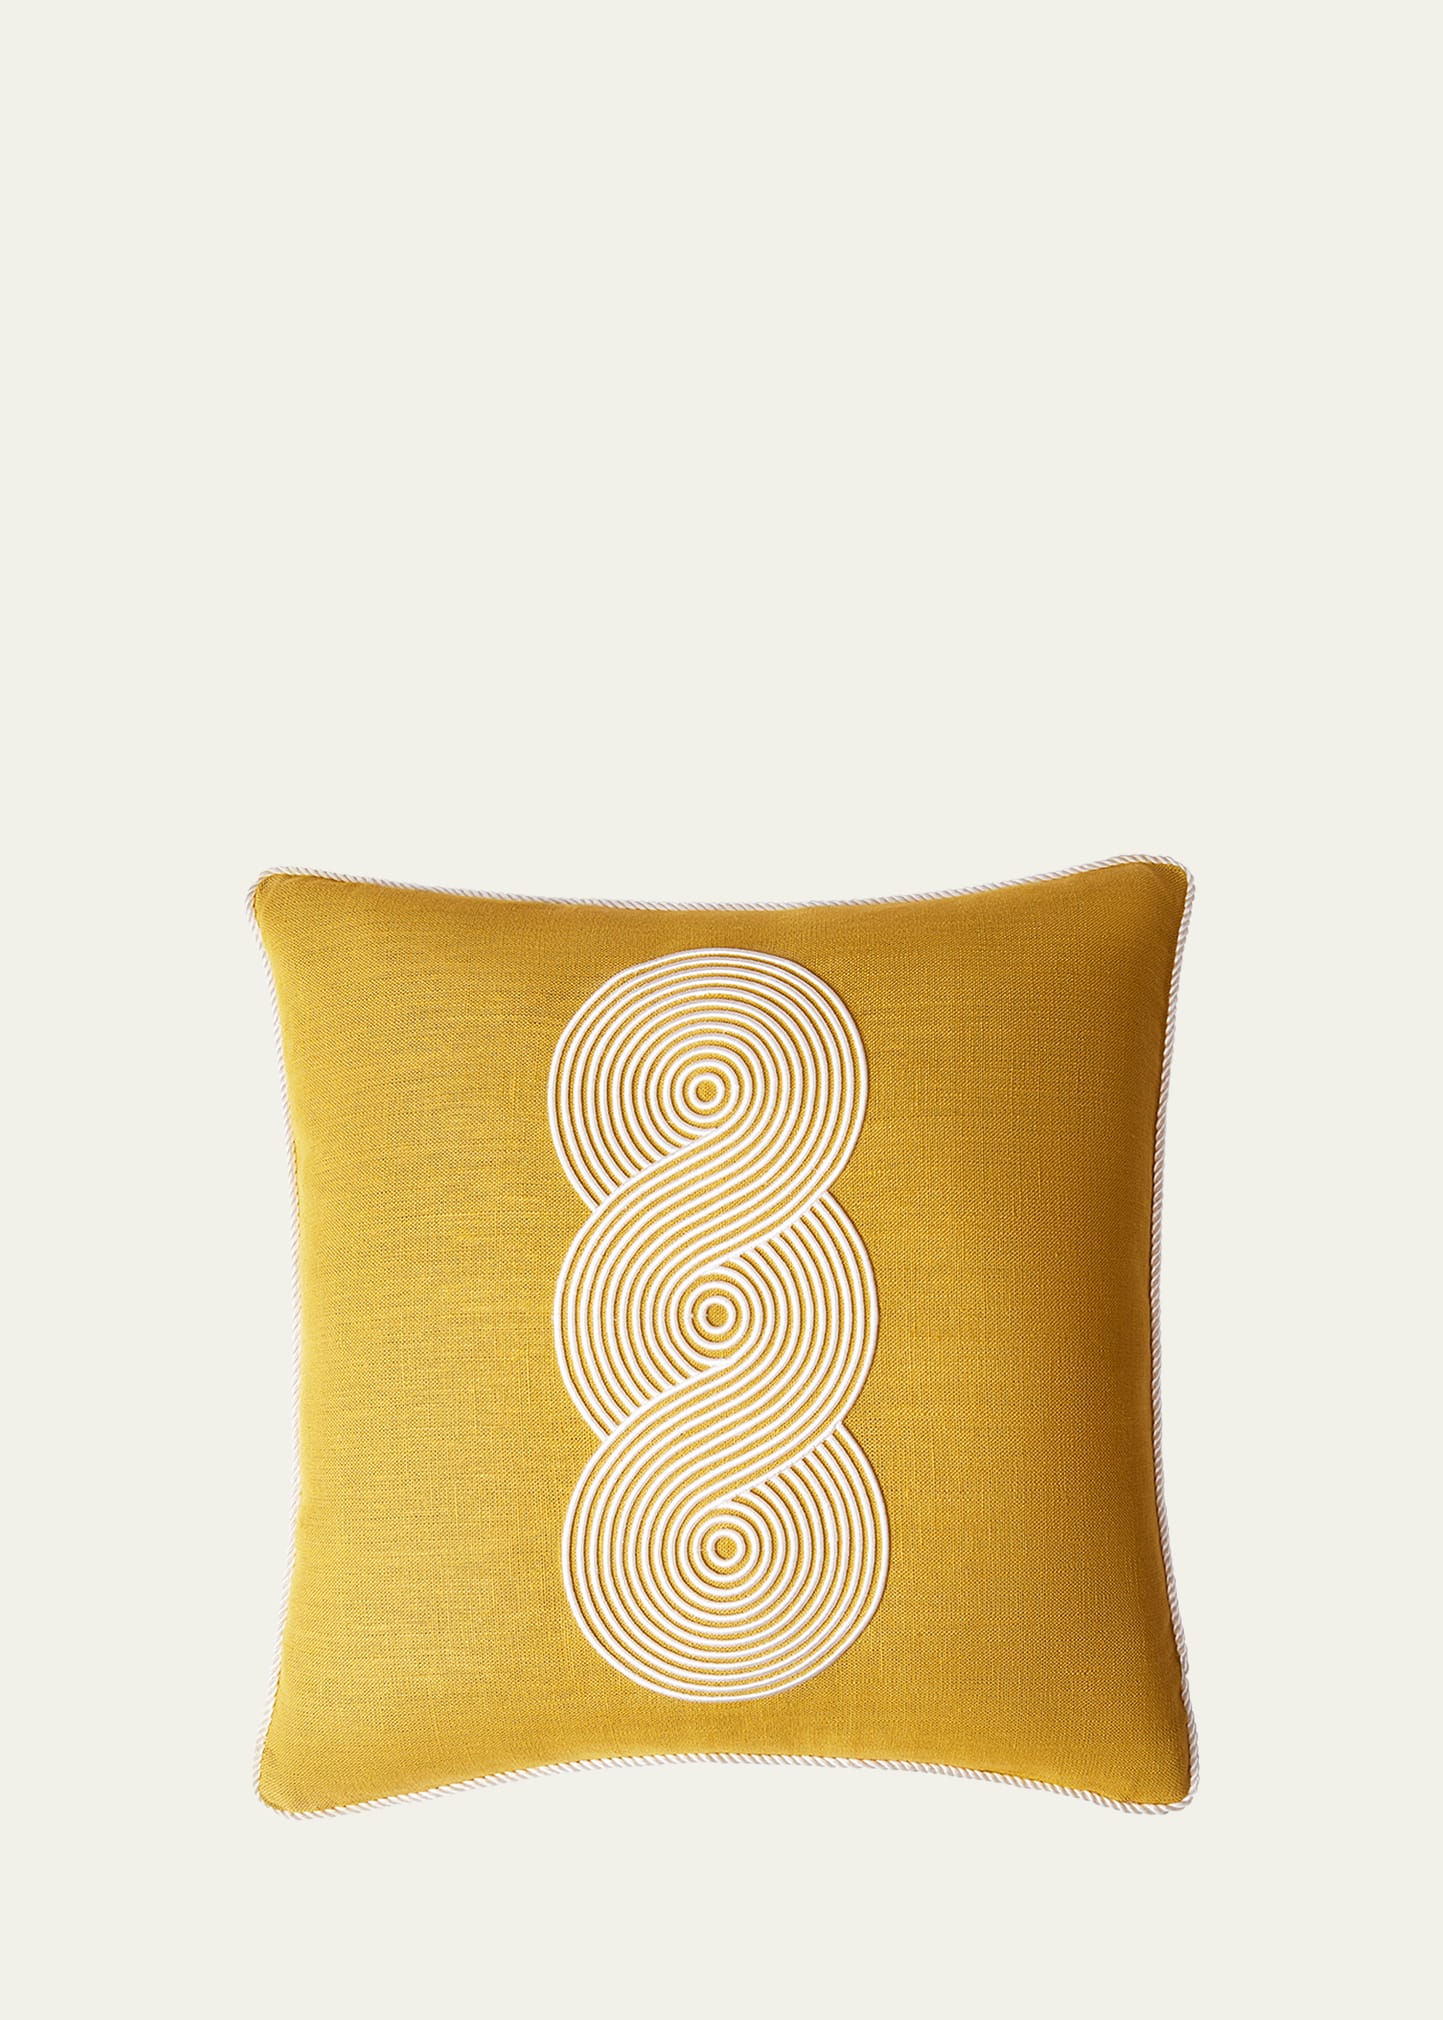 Jonathan Adler Pompidou Loops Pillow, Ochre